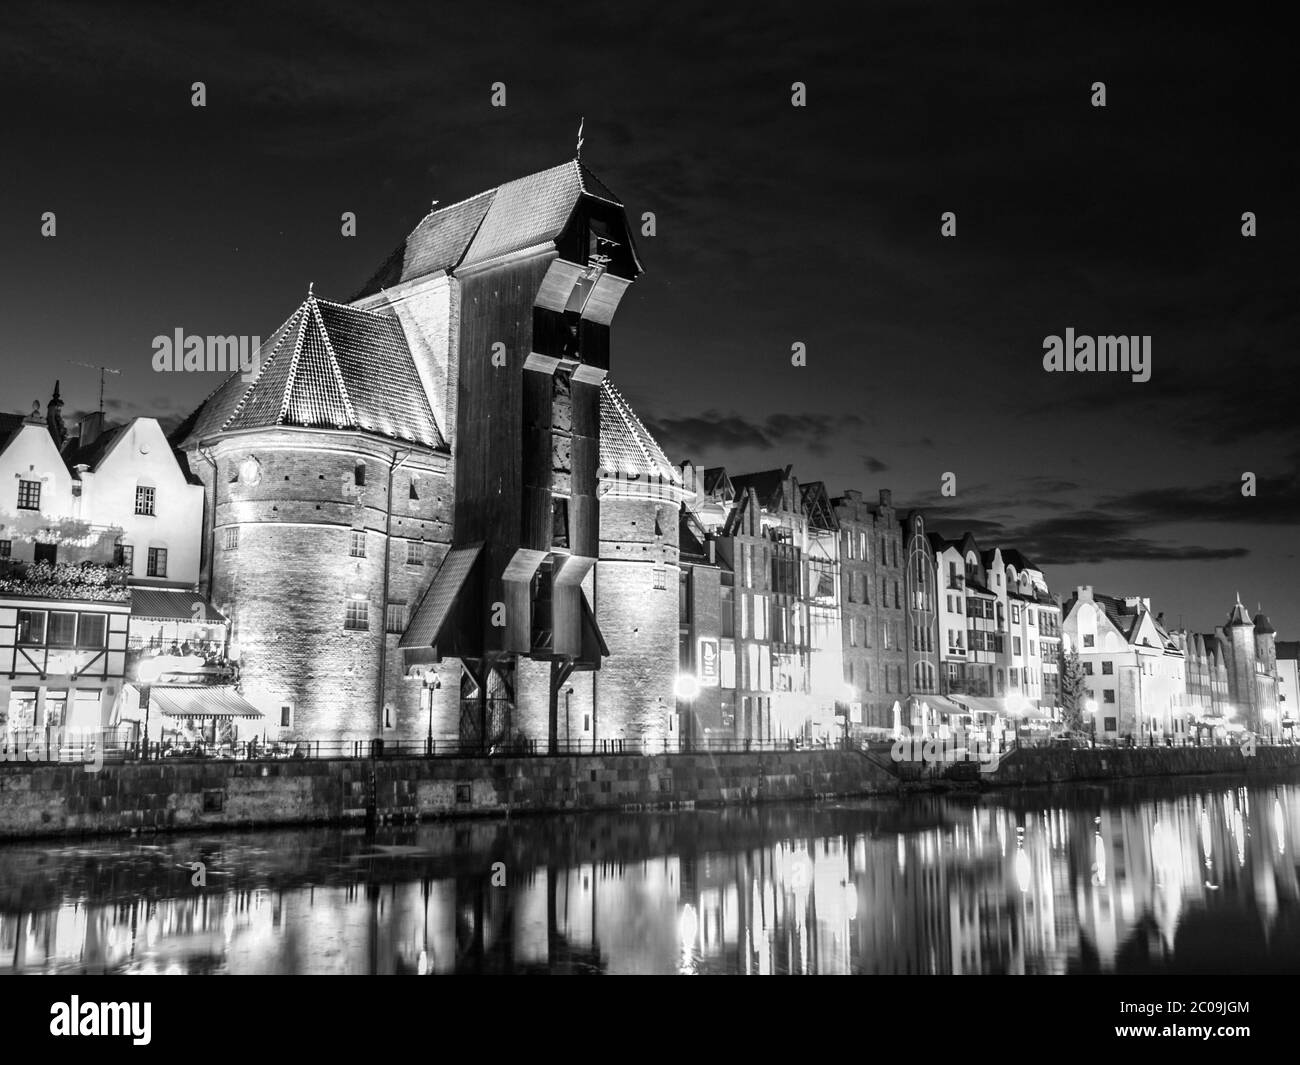 Danzig bei Nacht mit altem Kran und Reflexion in Motlawa Fluss, Polen. Schwarzweiß-Bild. Stockfoto